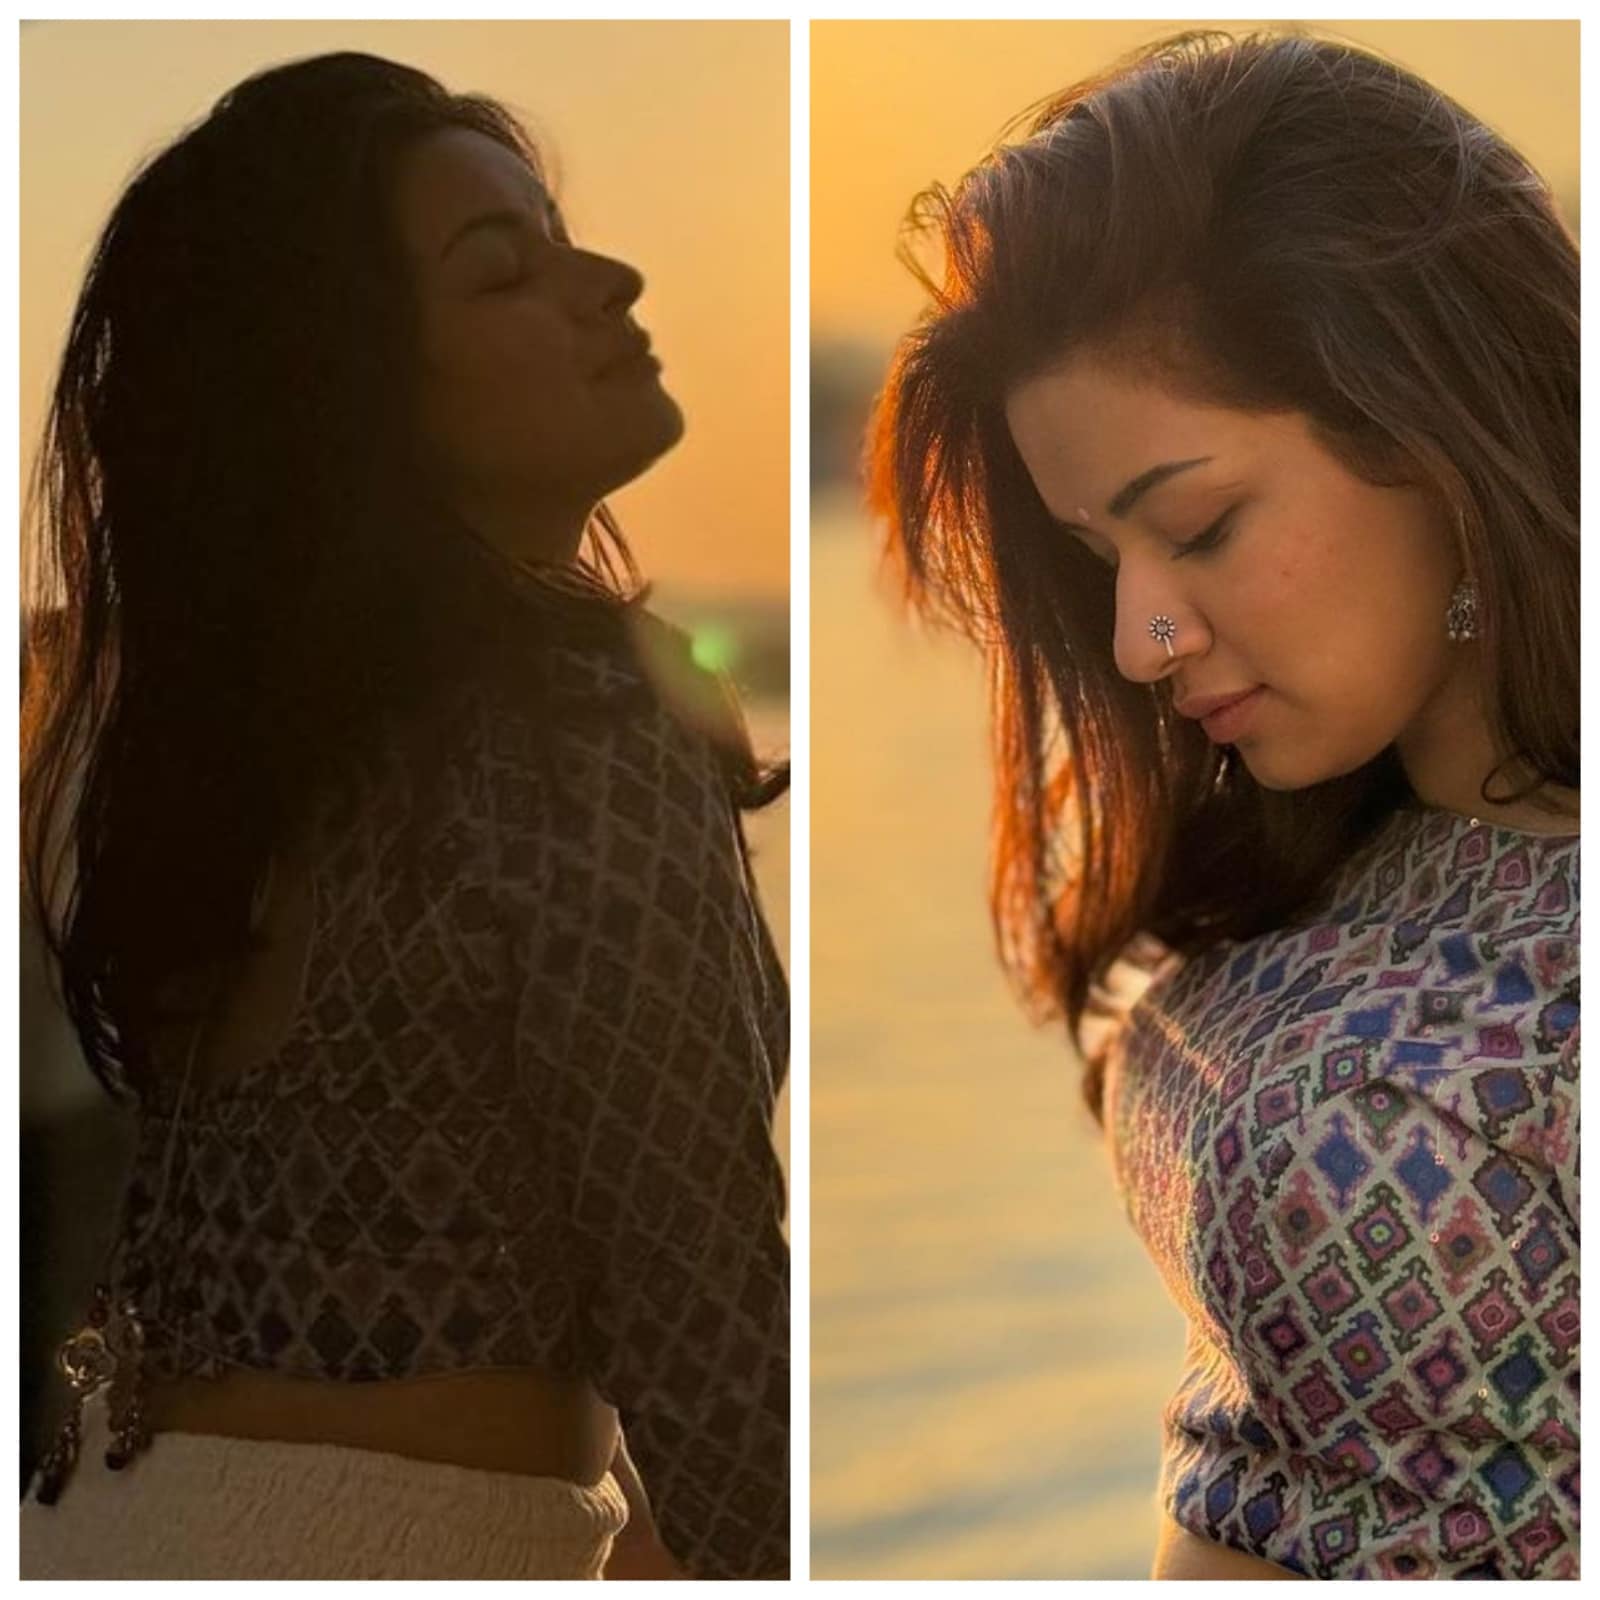 اداکارہ اونیت کور نے ایک مرتبہ پھر اپنے انداز اور اسٹائل سے فینس کو دیوانہ بنا دیا ہے ۔ حال ہی میں شیئر کی گئی ان تصویروں میں اونیت کور کافی خوبصورت لگ رہی ہیں ۔ اداکارہ کی تصاویر انٹرنیٹ پر آگ کی طرح پھیل رہی ہیں۔ (Photo: @avneetkaur_13/Instagram)